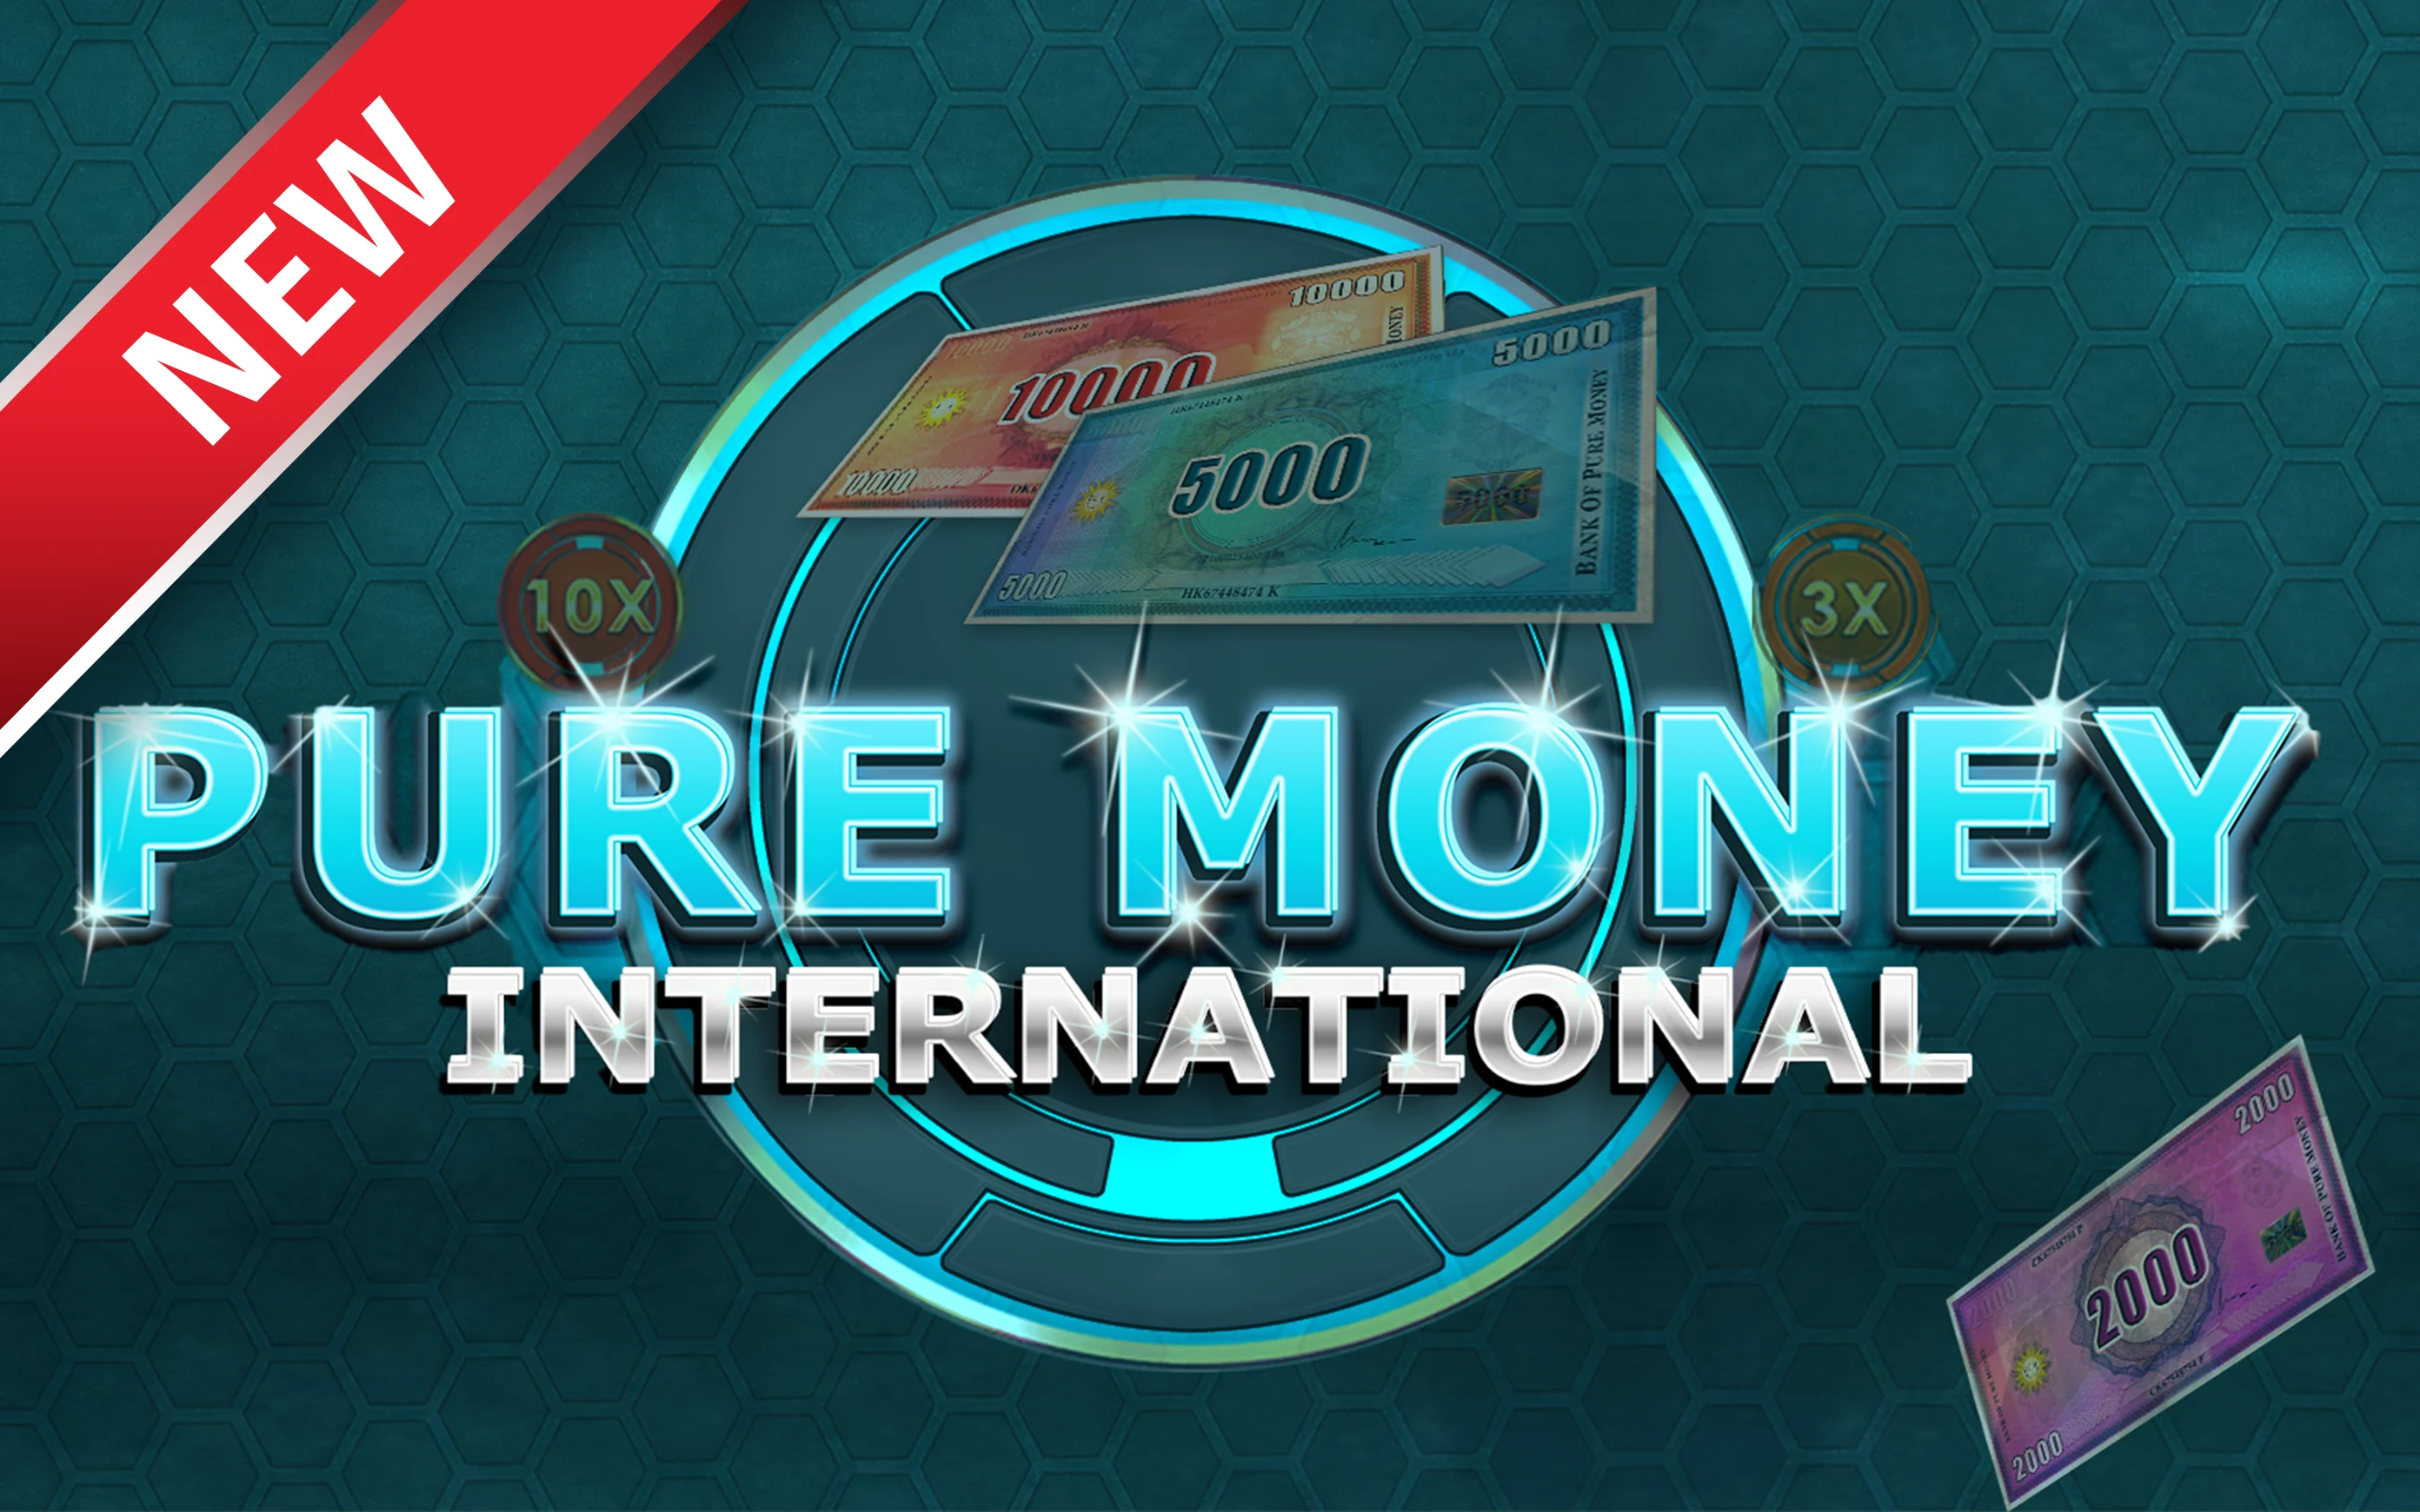 Play Pure Money International on Starcasino.be online casino